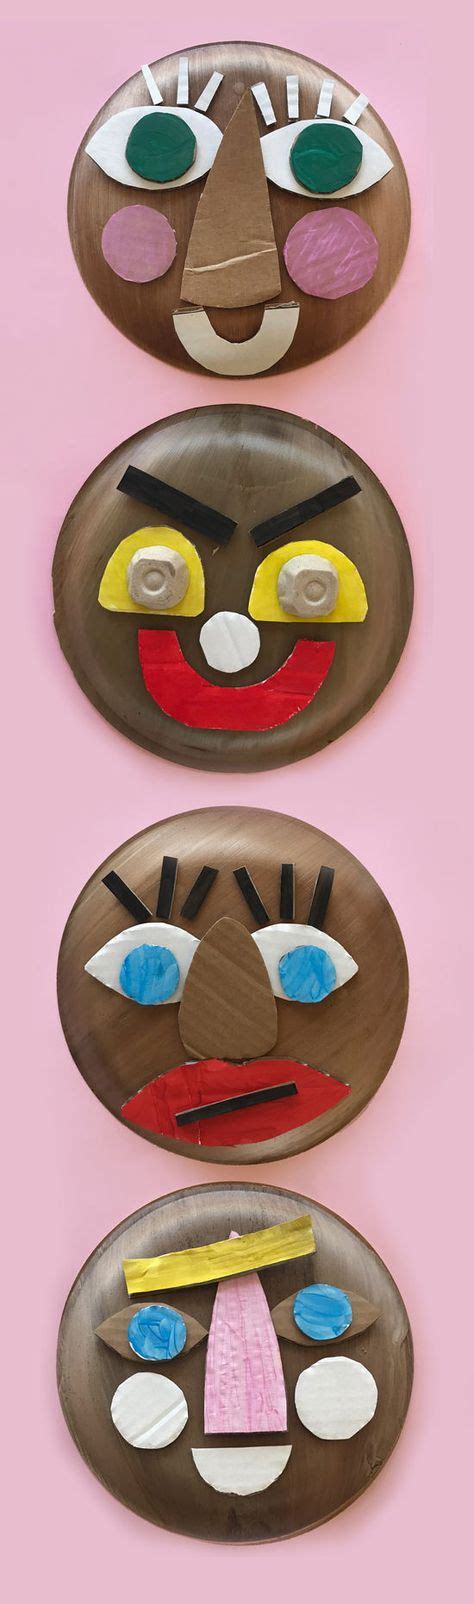 paper plate faces   craft activities  kids art activities